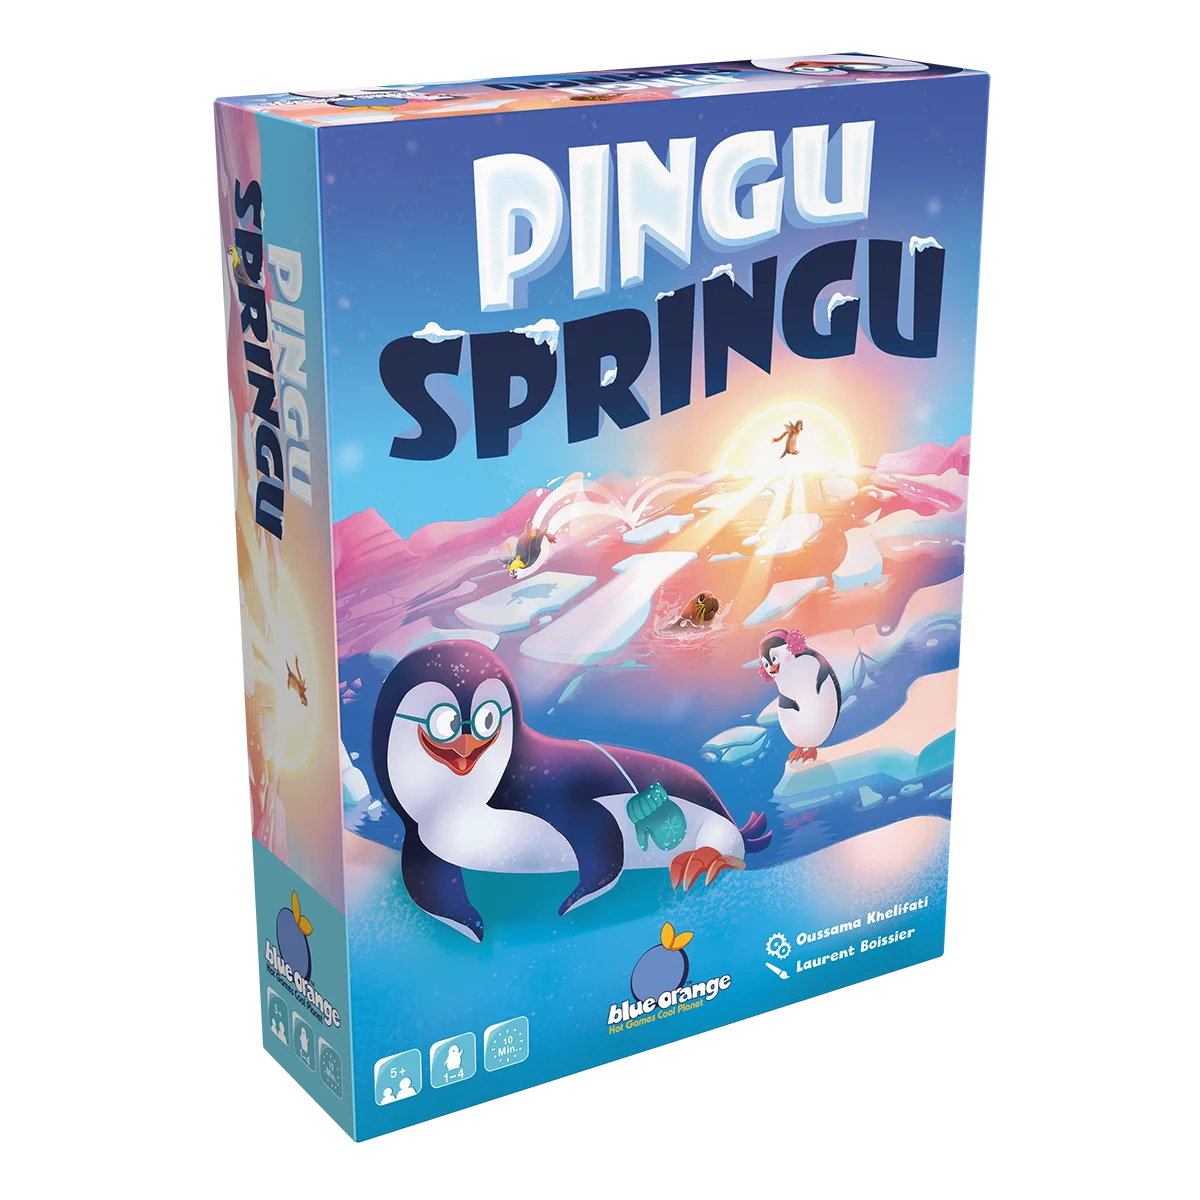 Pingu Springu